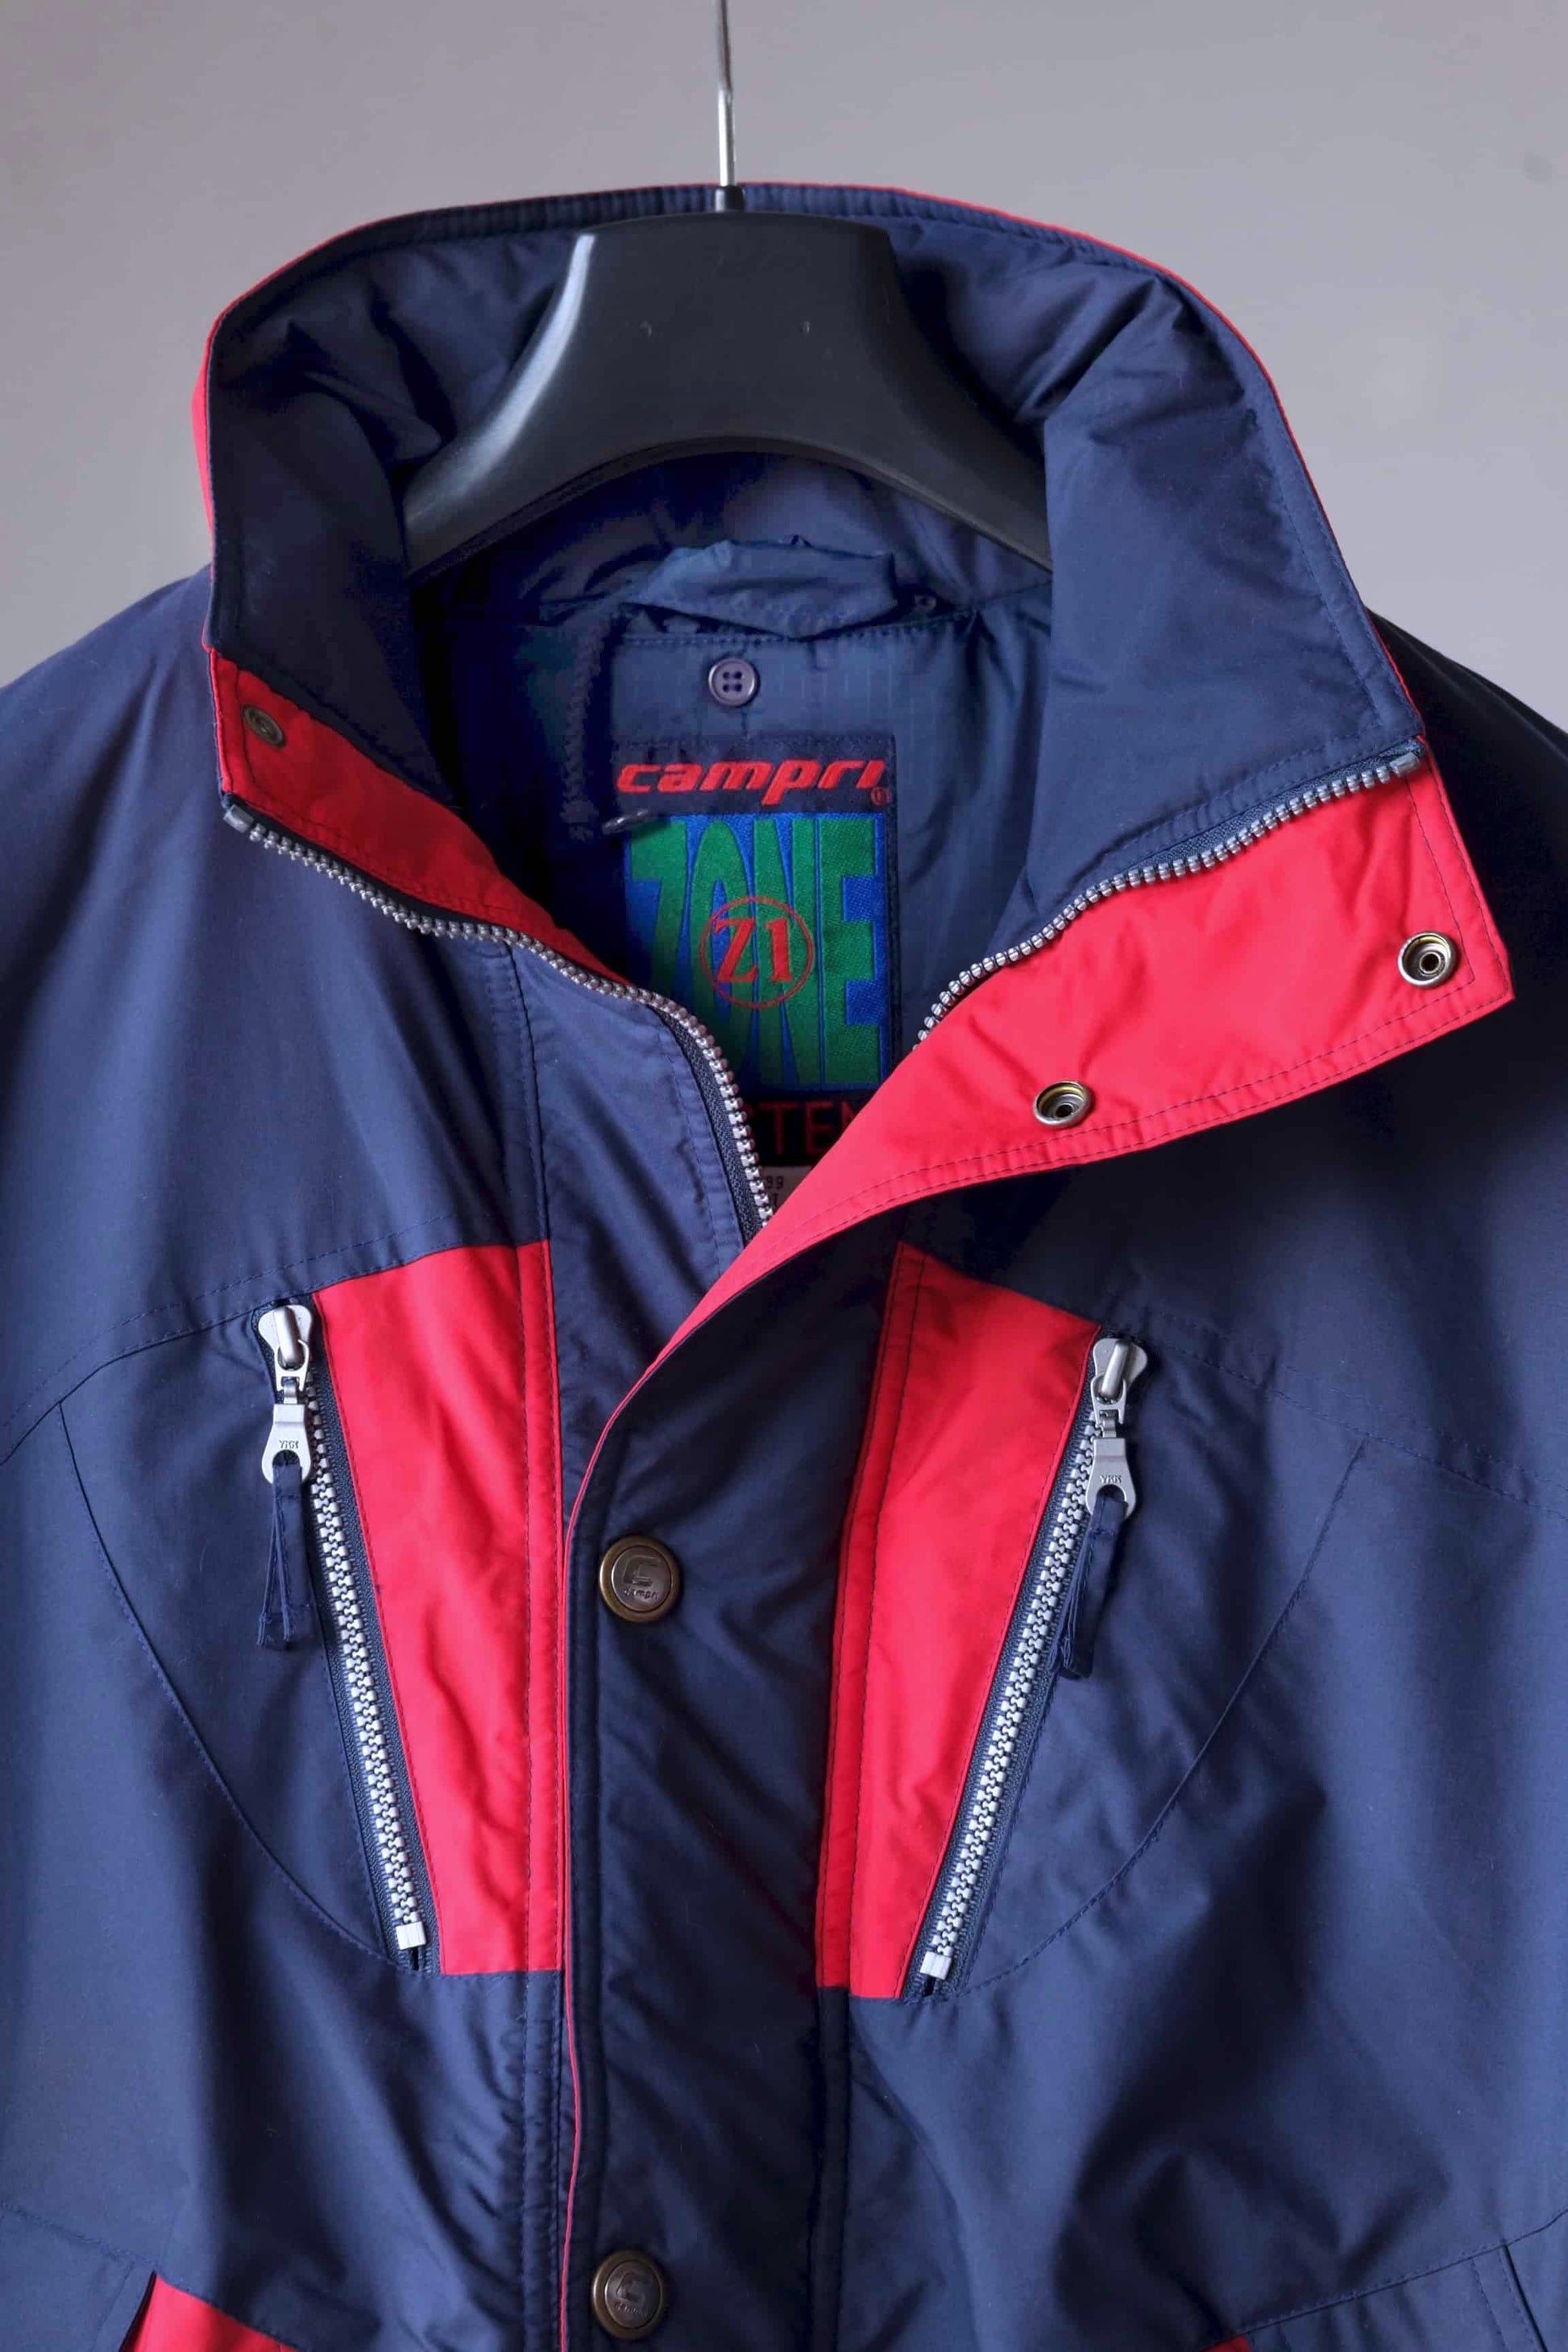 Vintage 90's Men's Ski Jacket close up